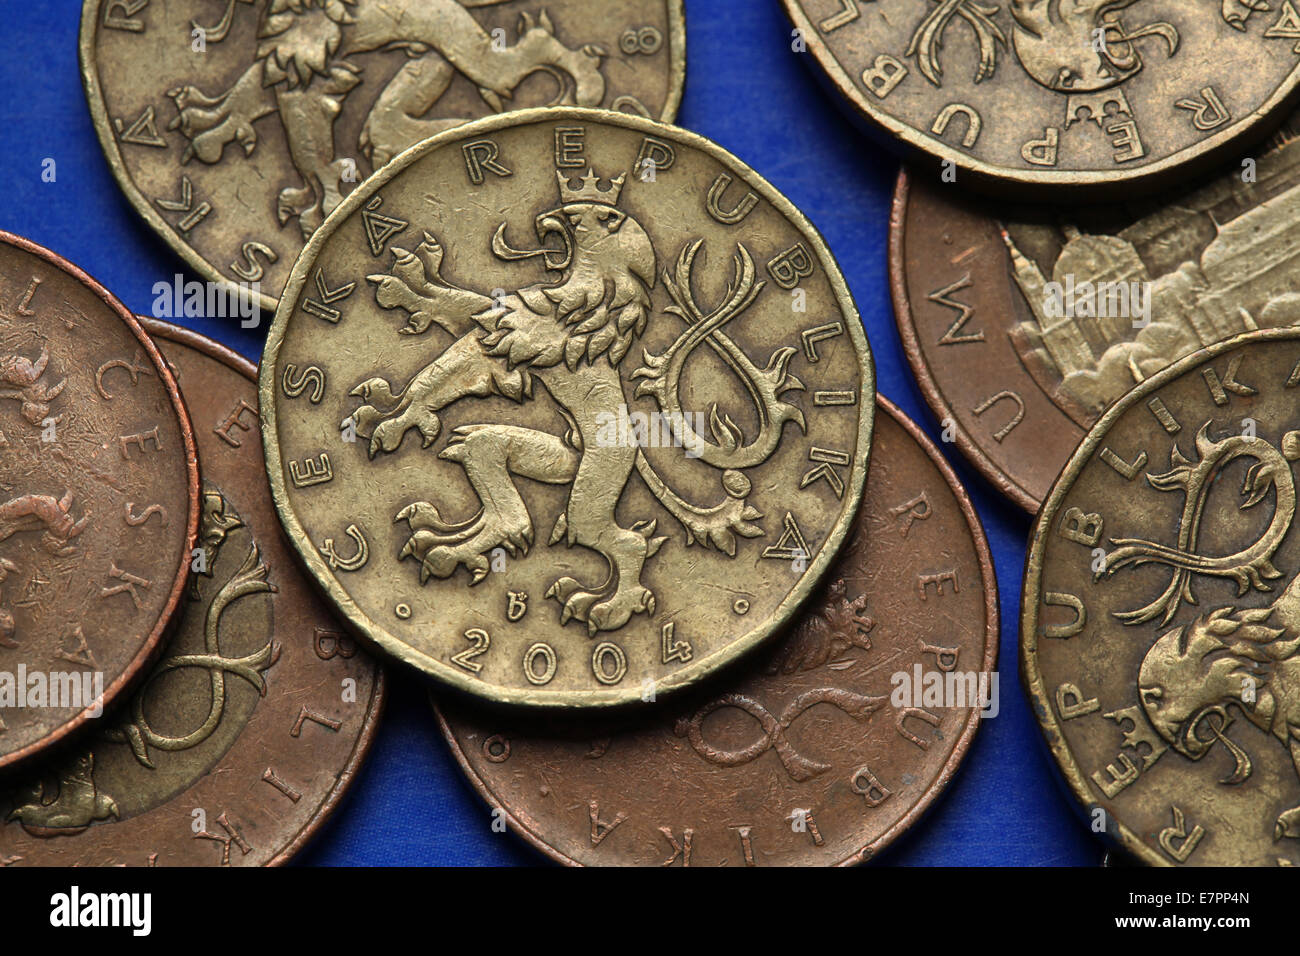 Münzen der Tschechischen Republik. Böhmischen heraldischen Löwen in 20 CZK Münzen abgebildet. Stockfoto